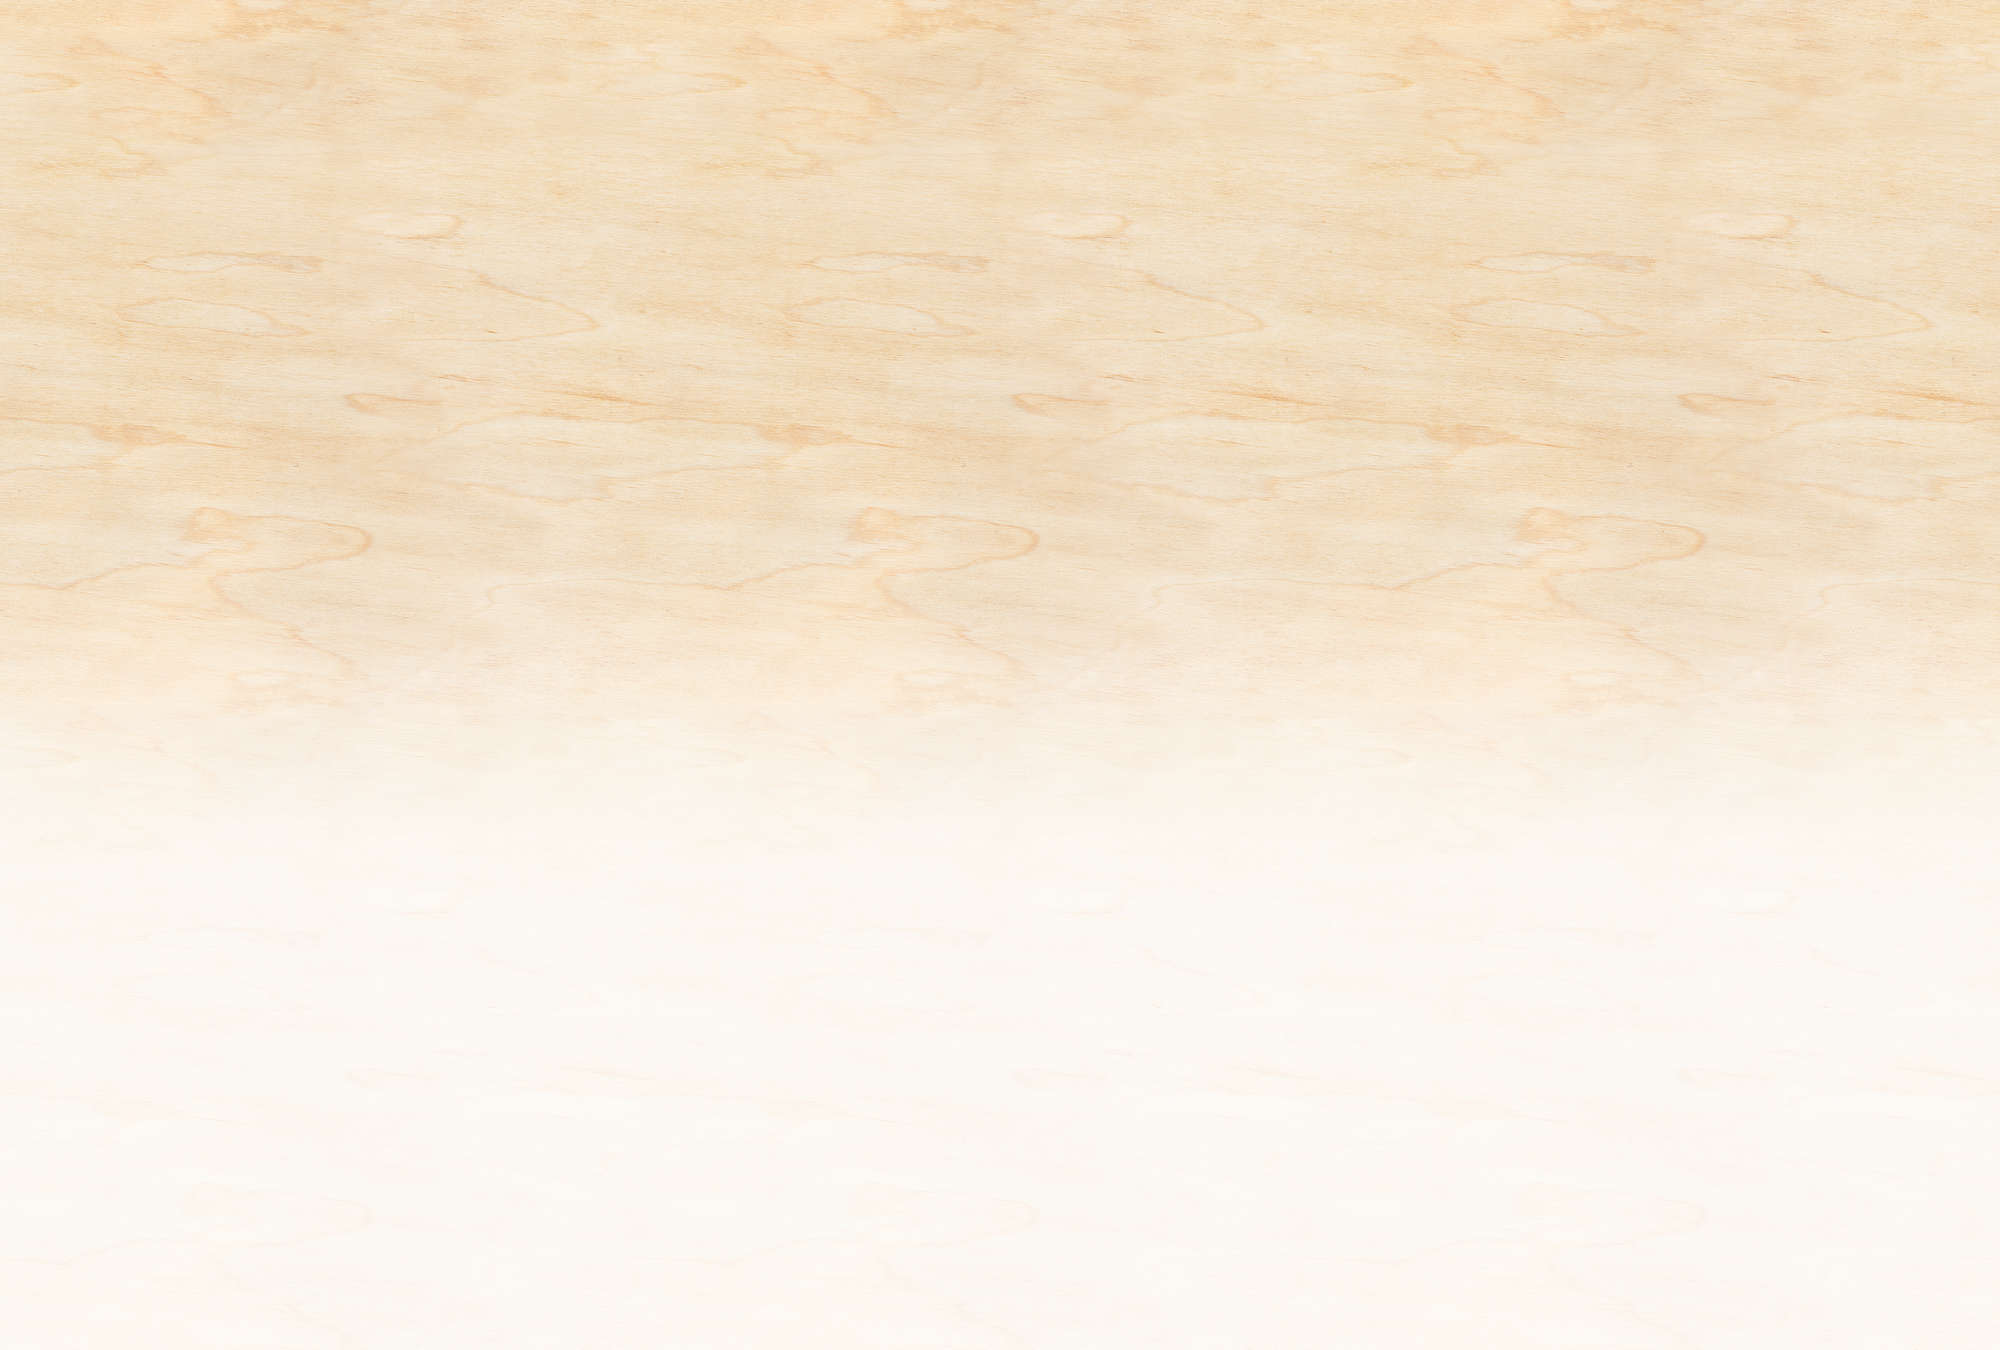             Taller 3 - Papel pintado ombre beige y blanco con grano de madera
        